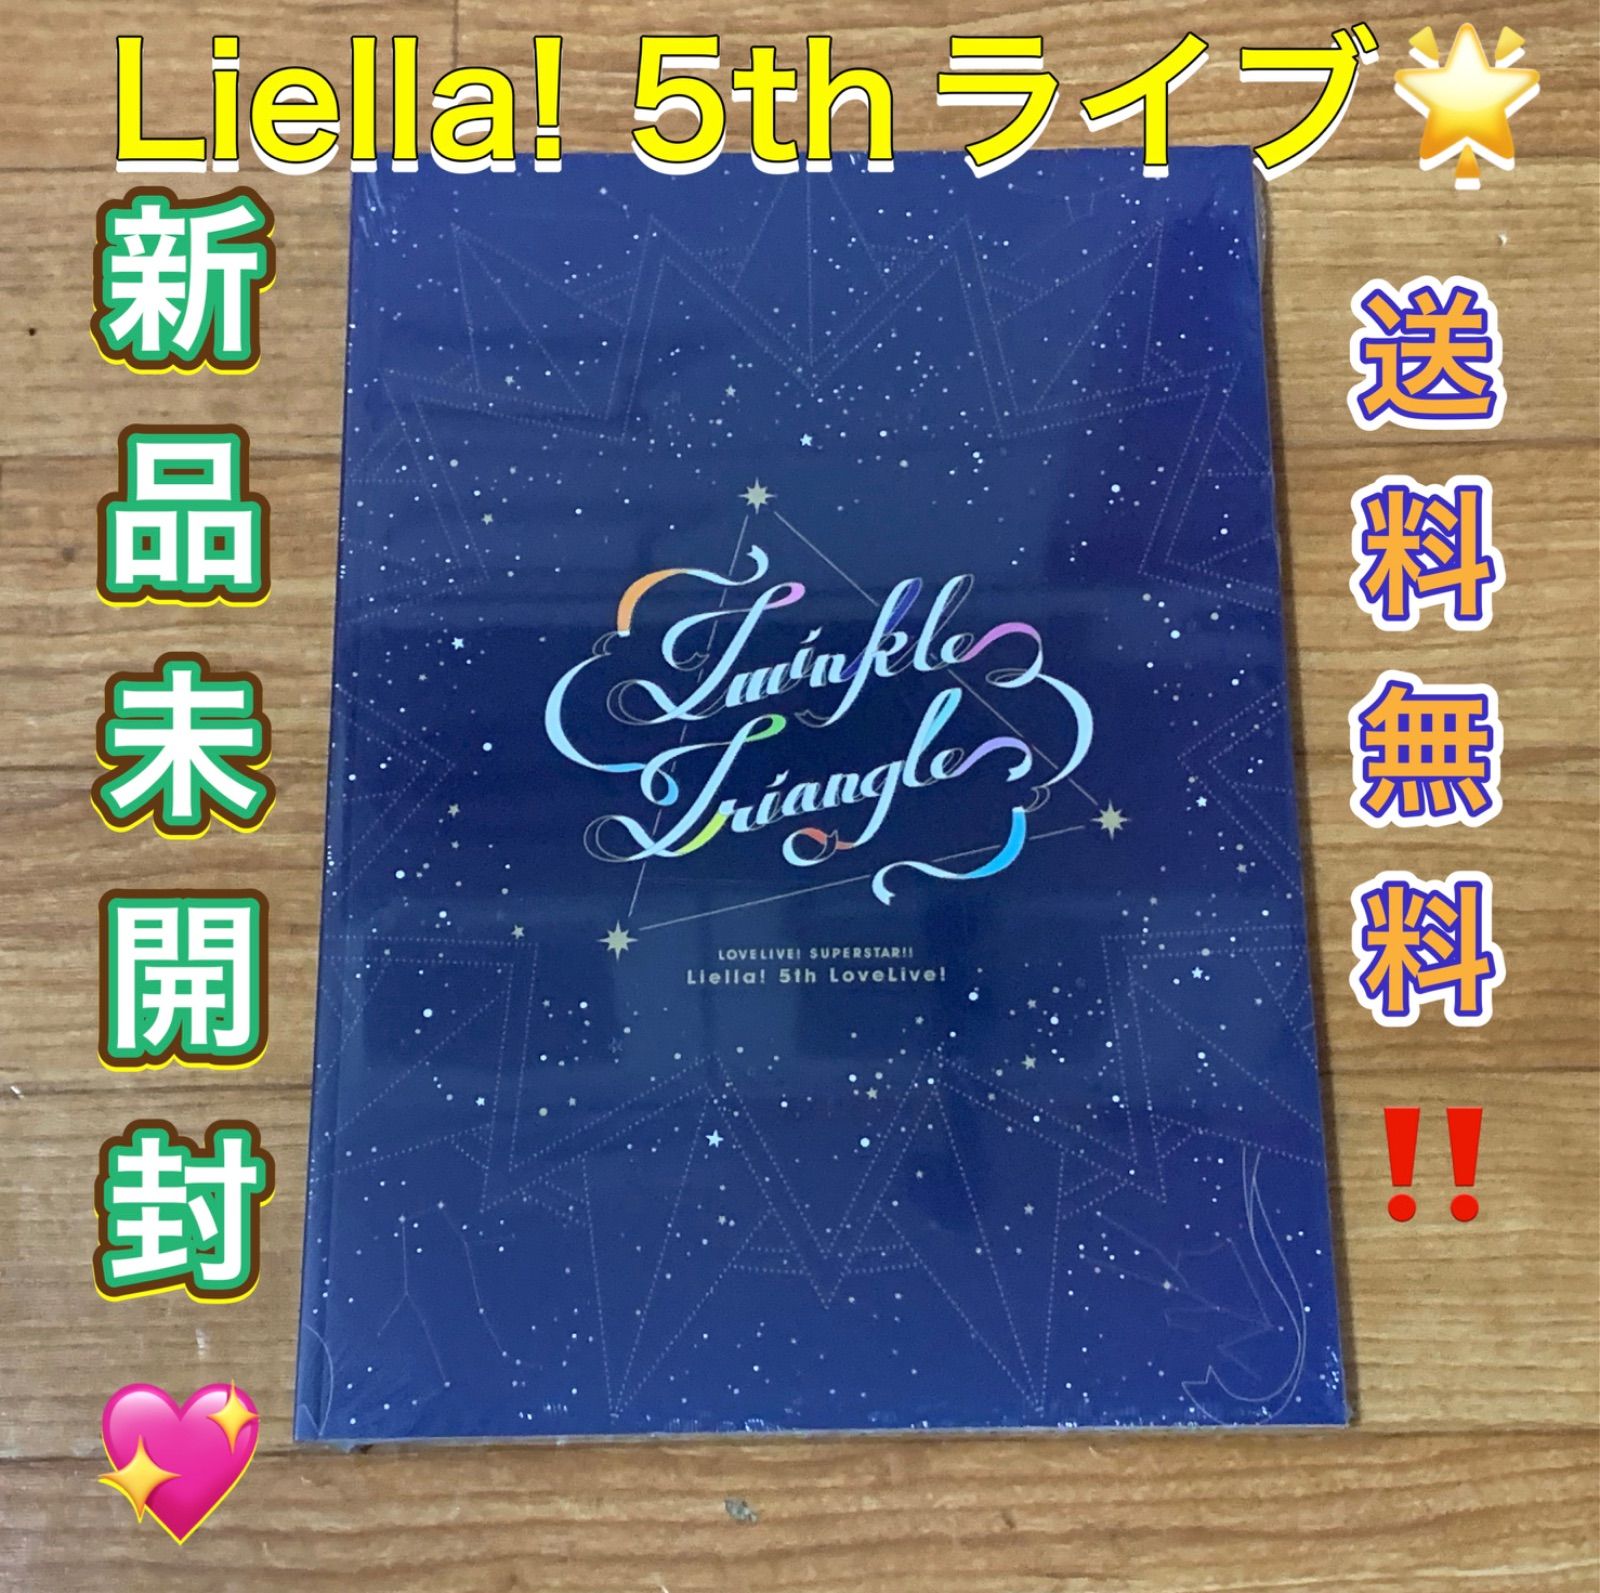 Liella! 5th ラブライブ パンフレット 【12時間以内に発送】リエラ